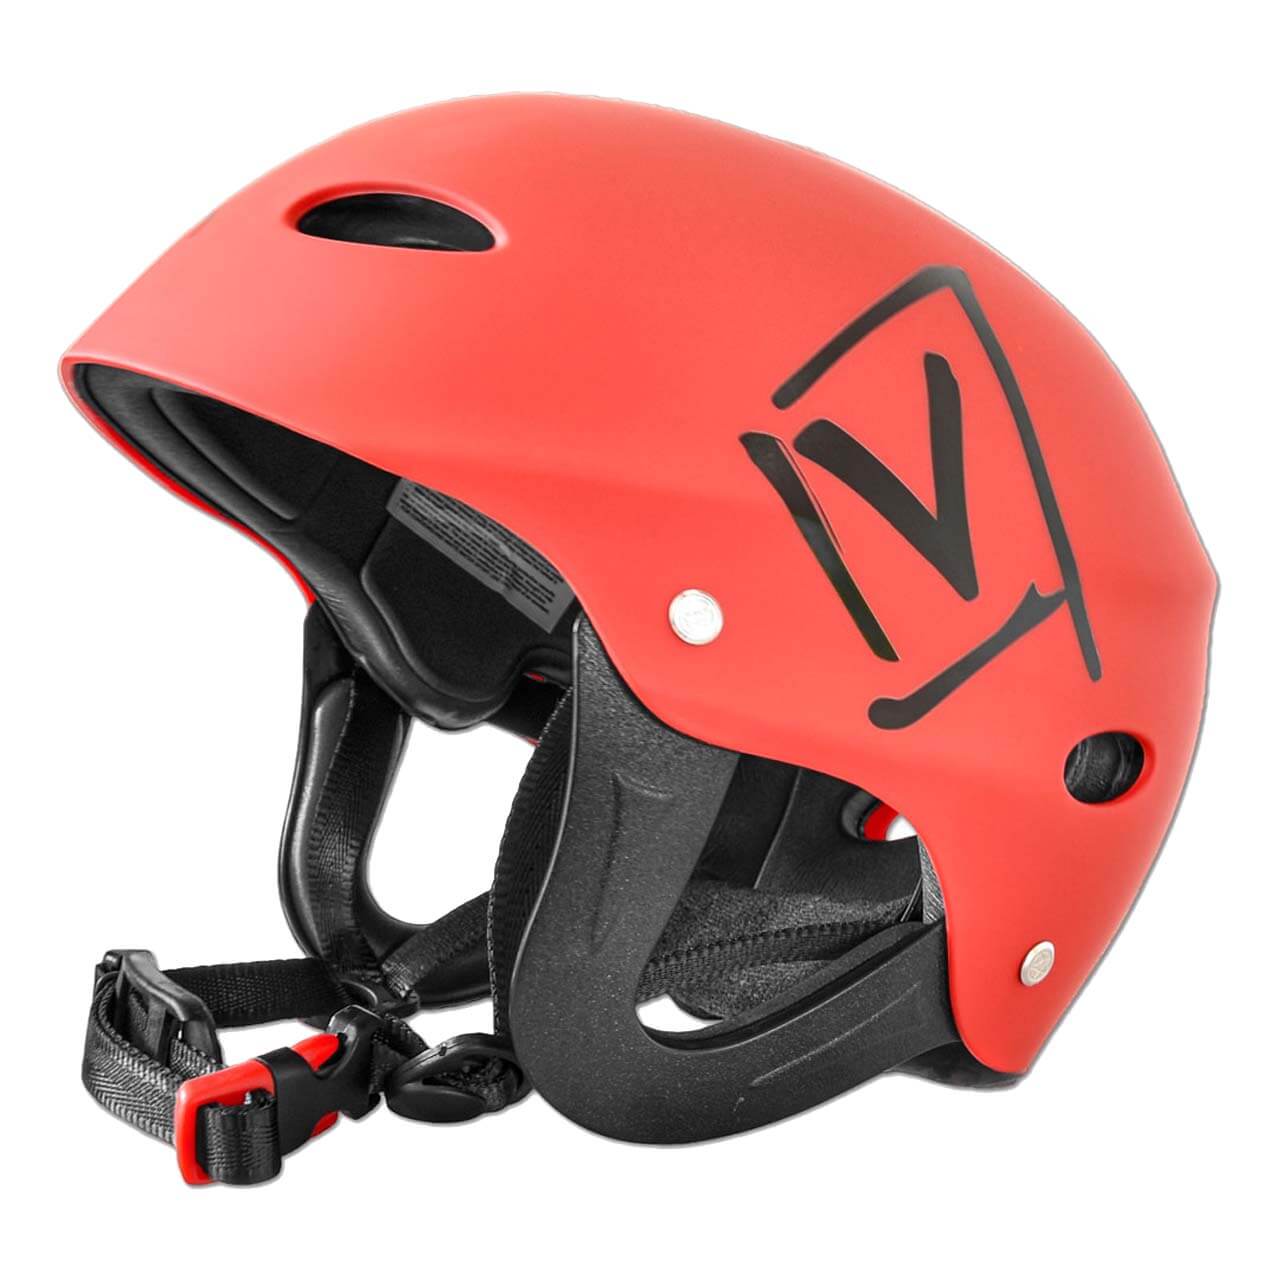 Verano Wassersport Rapid Helm - Rot, L/XL von Verano Watersports